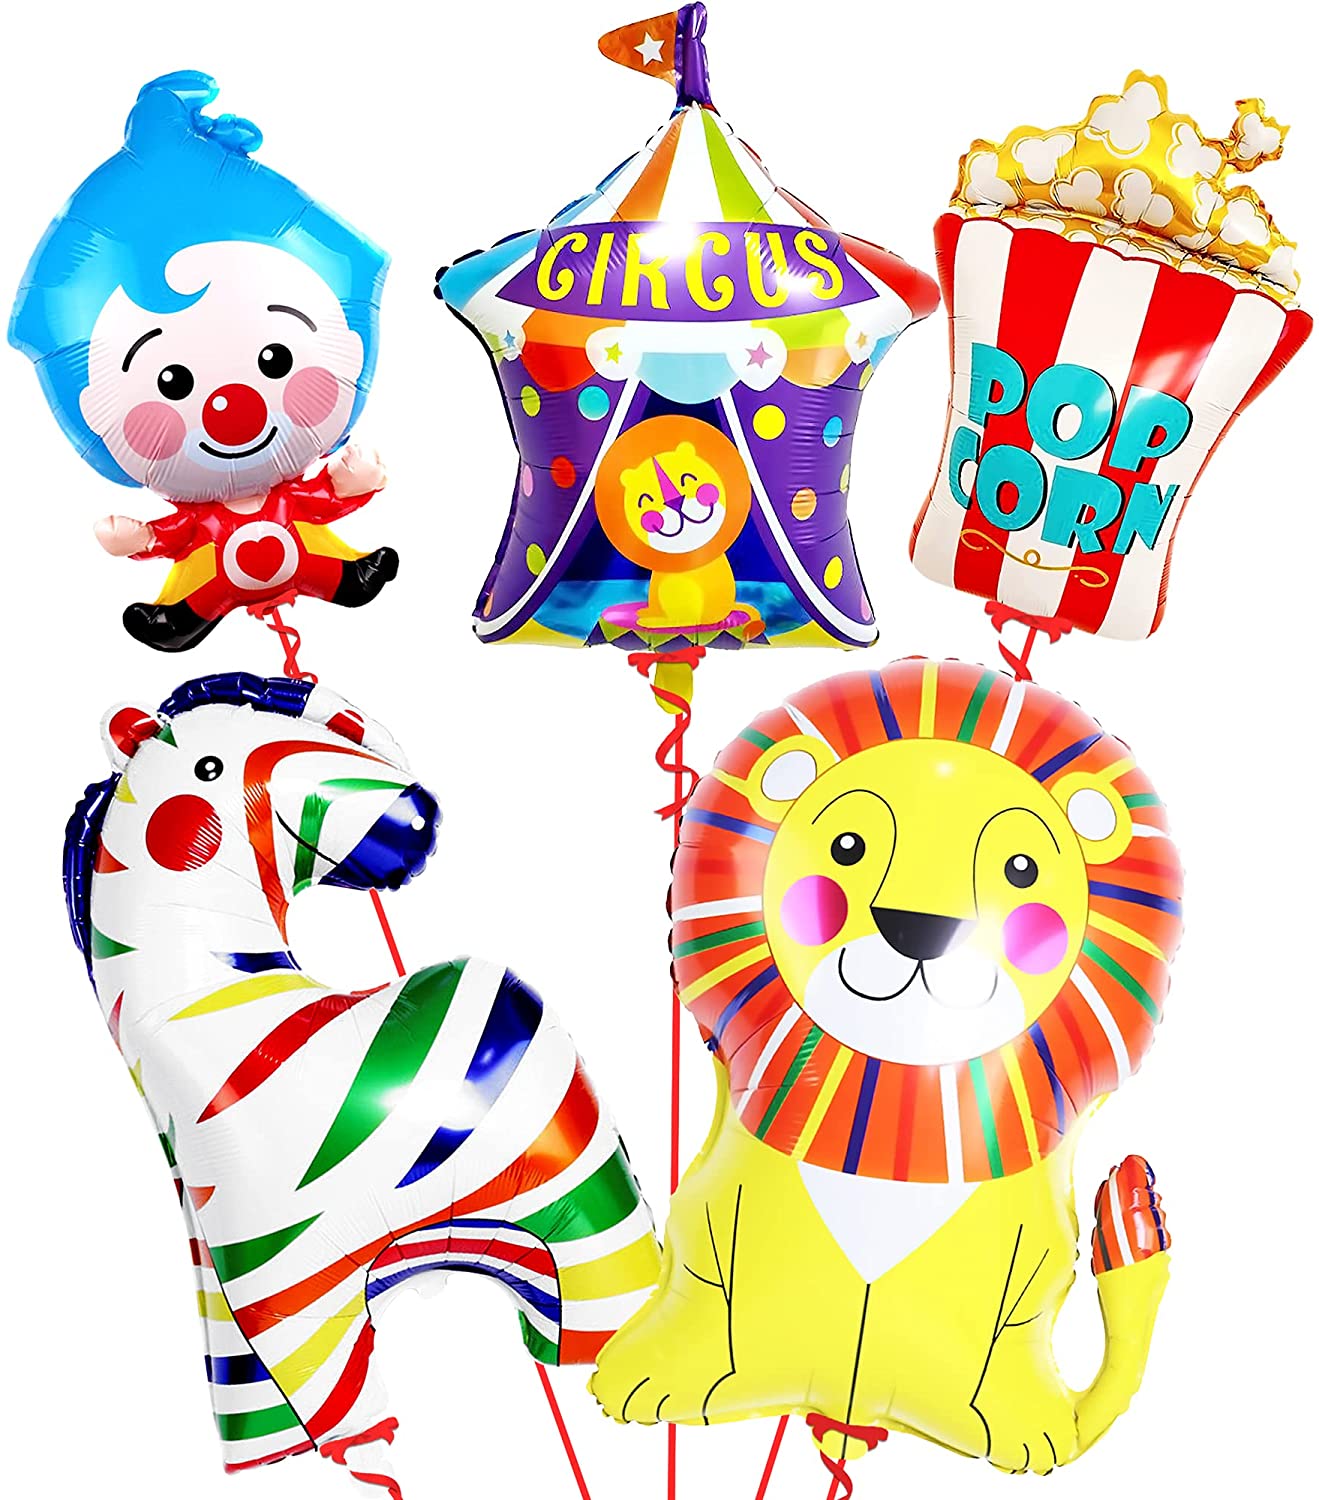 life's-a-circus-enjoy-the-party-circus-balloon-set